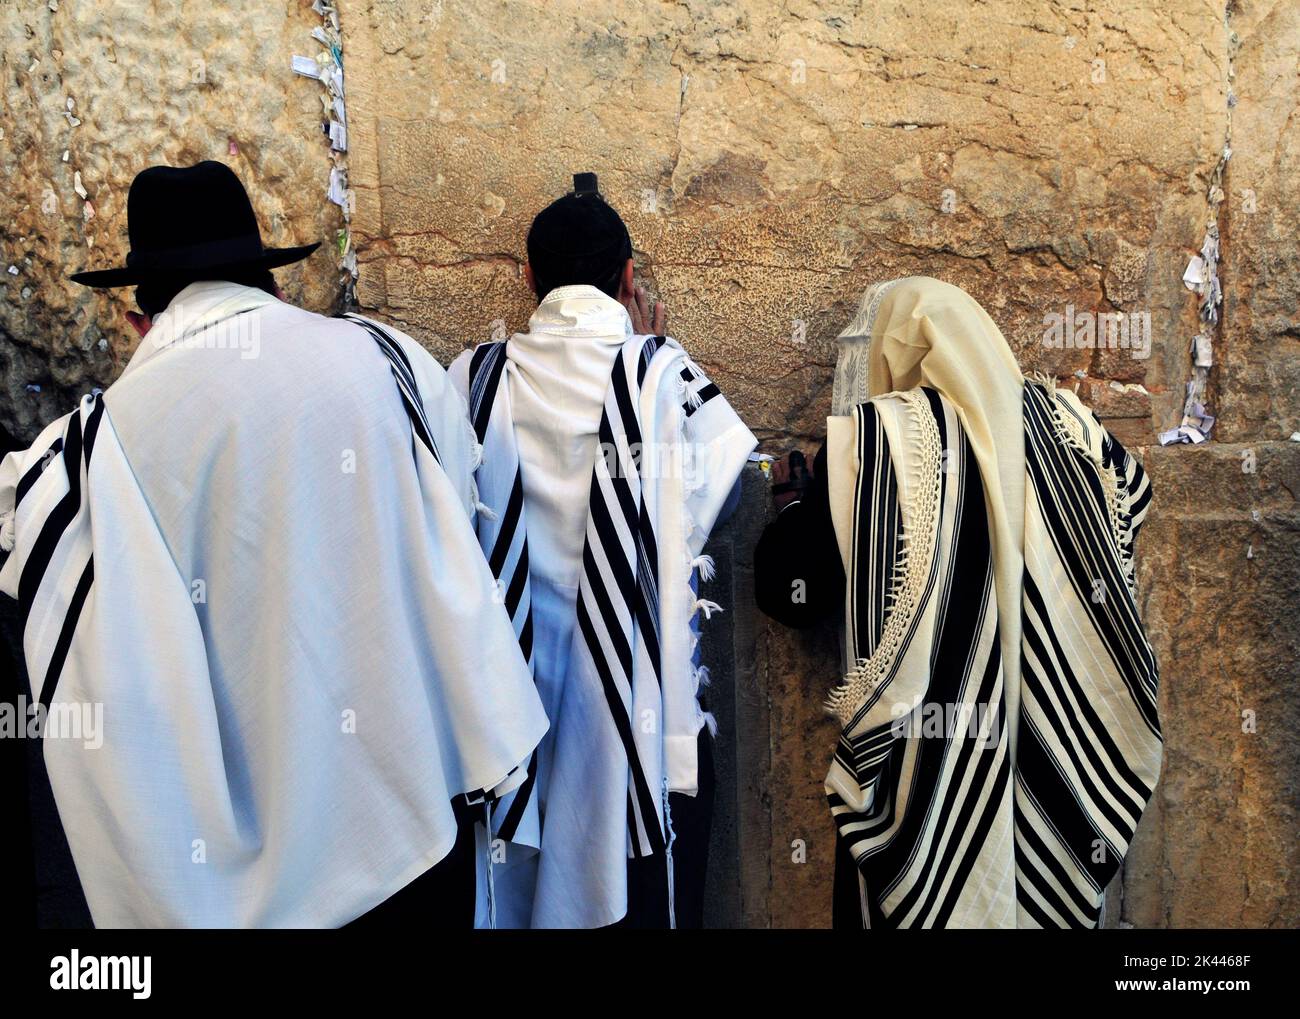 Hombres judíos orando junto al Muro de las Lamentaciones / Muro Occidental en el barrio judío de la ciudad vieja de Jerusalén, Israel. Foto de stock